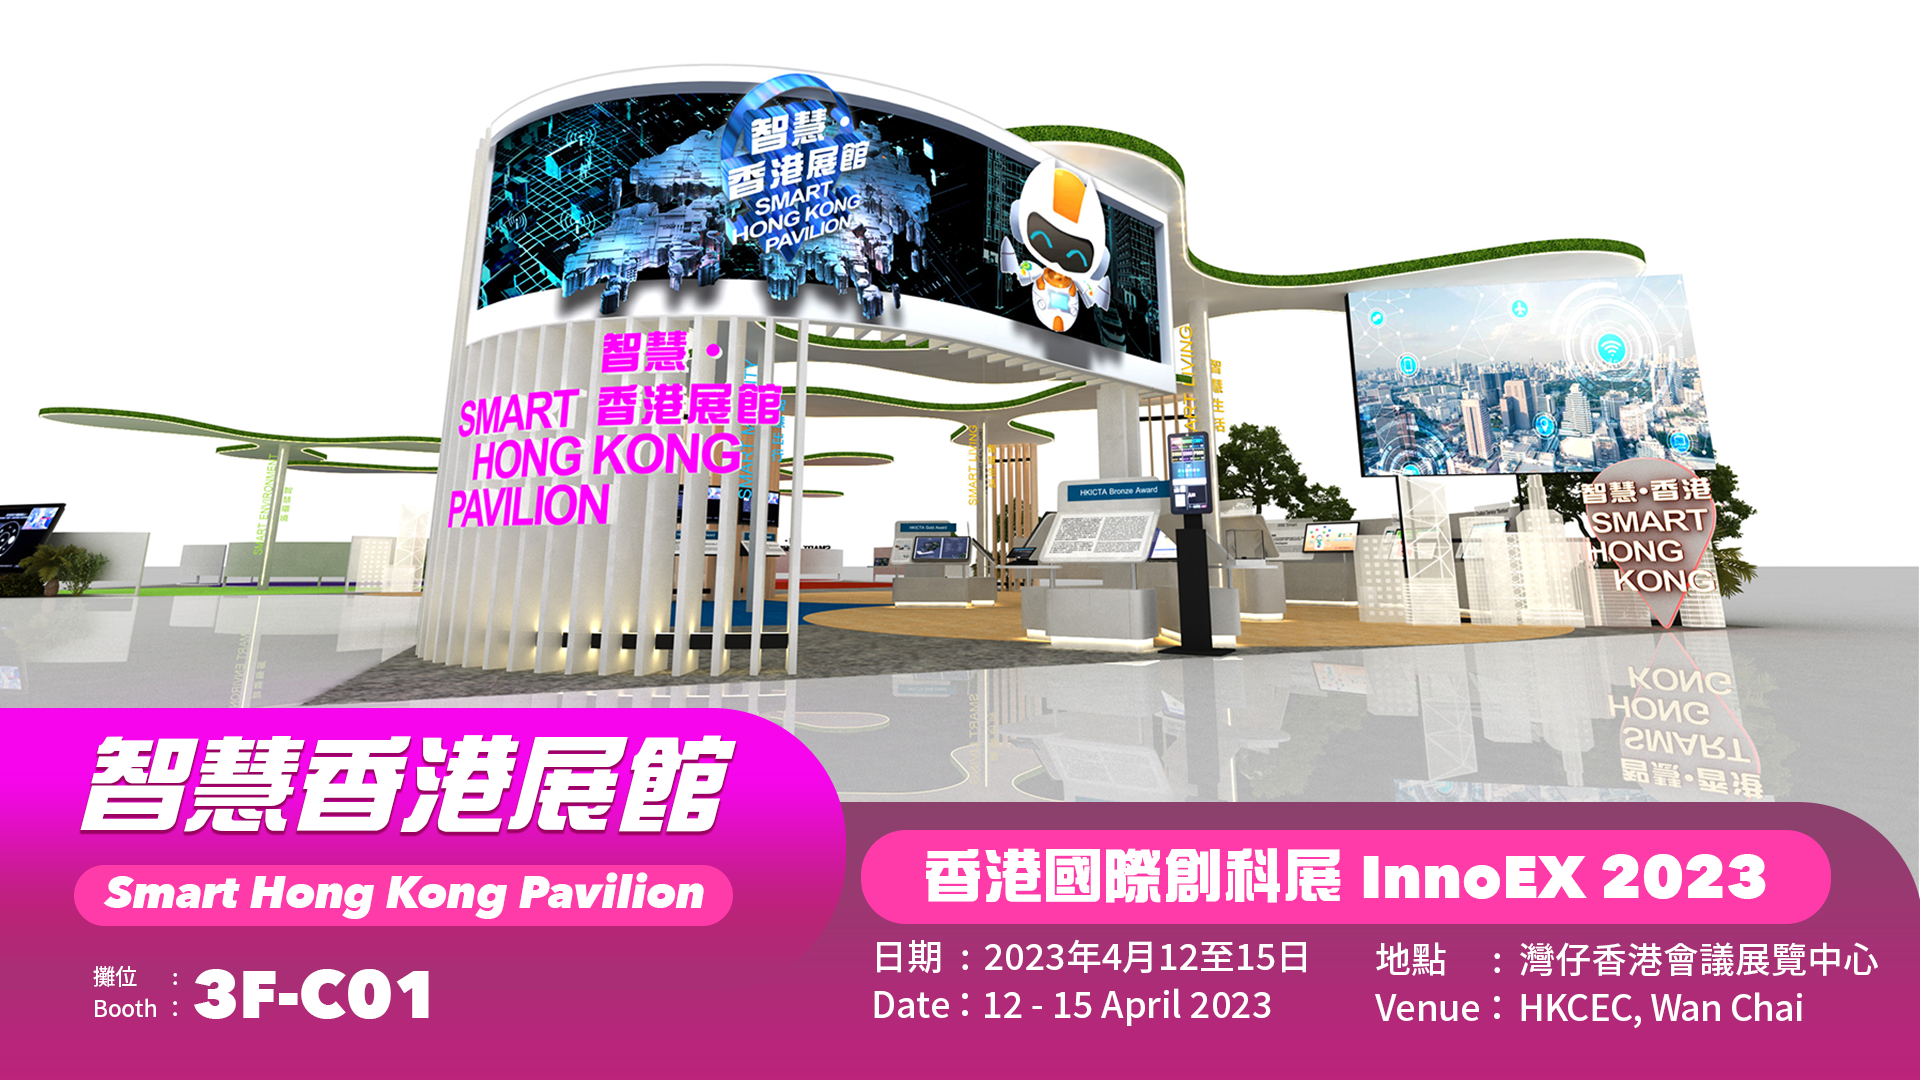 Smart Hong Kong Pavilion at the INNOEX 2023